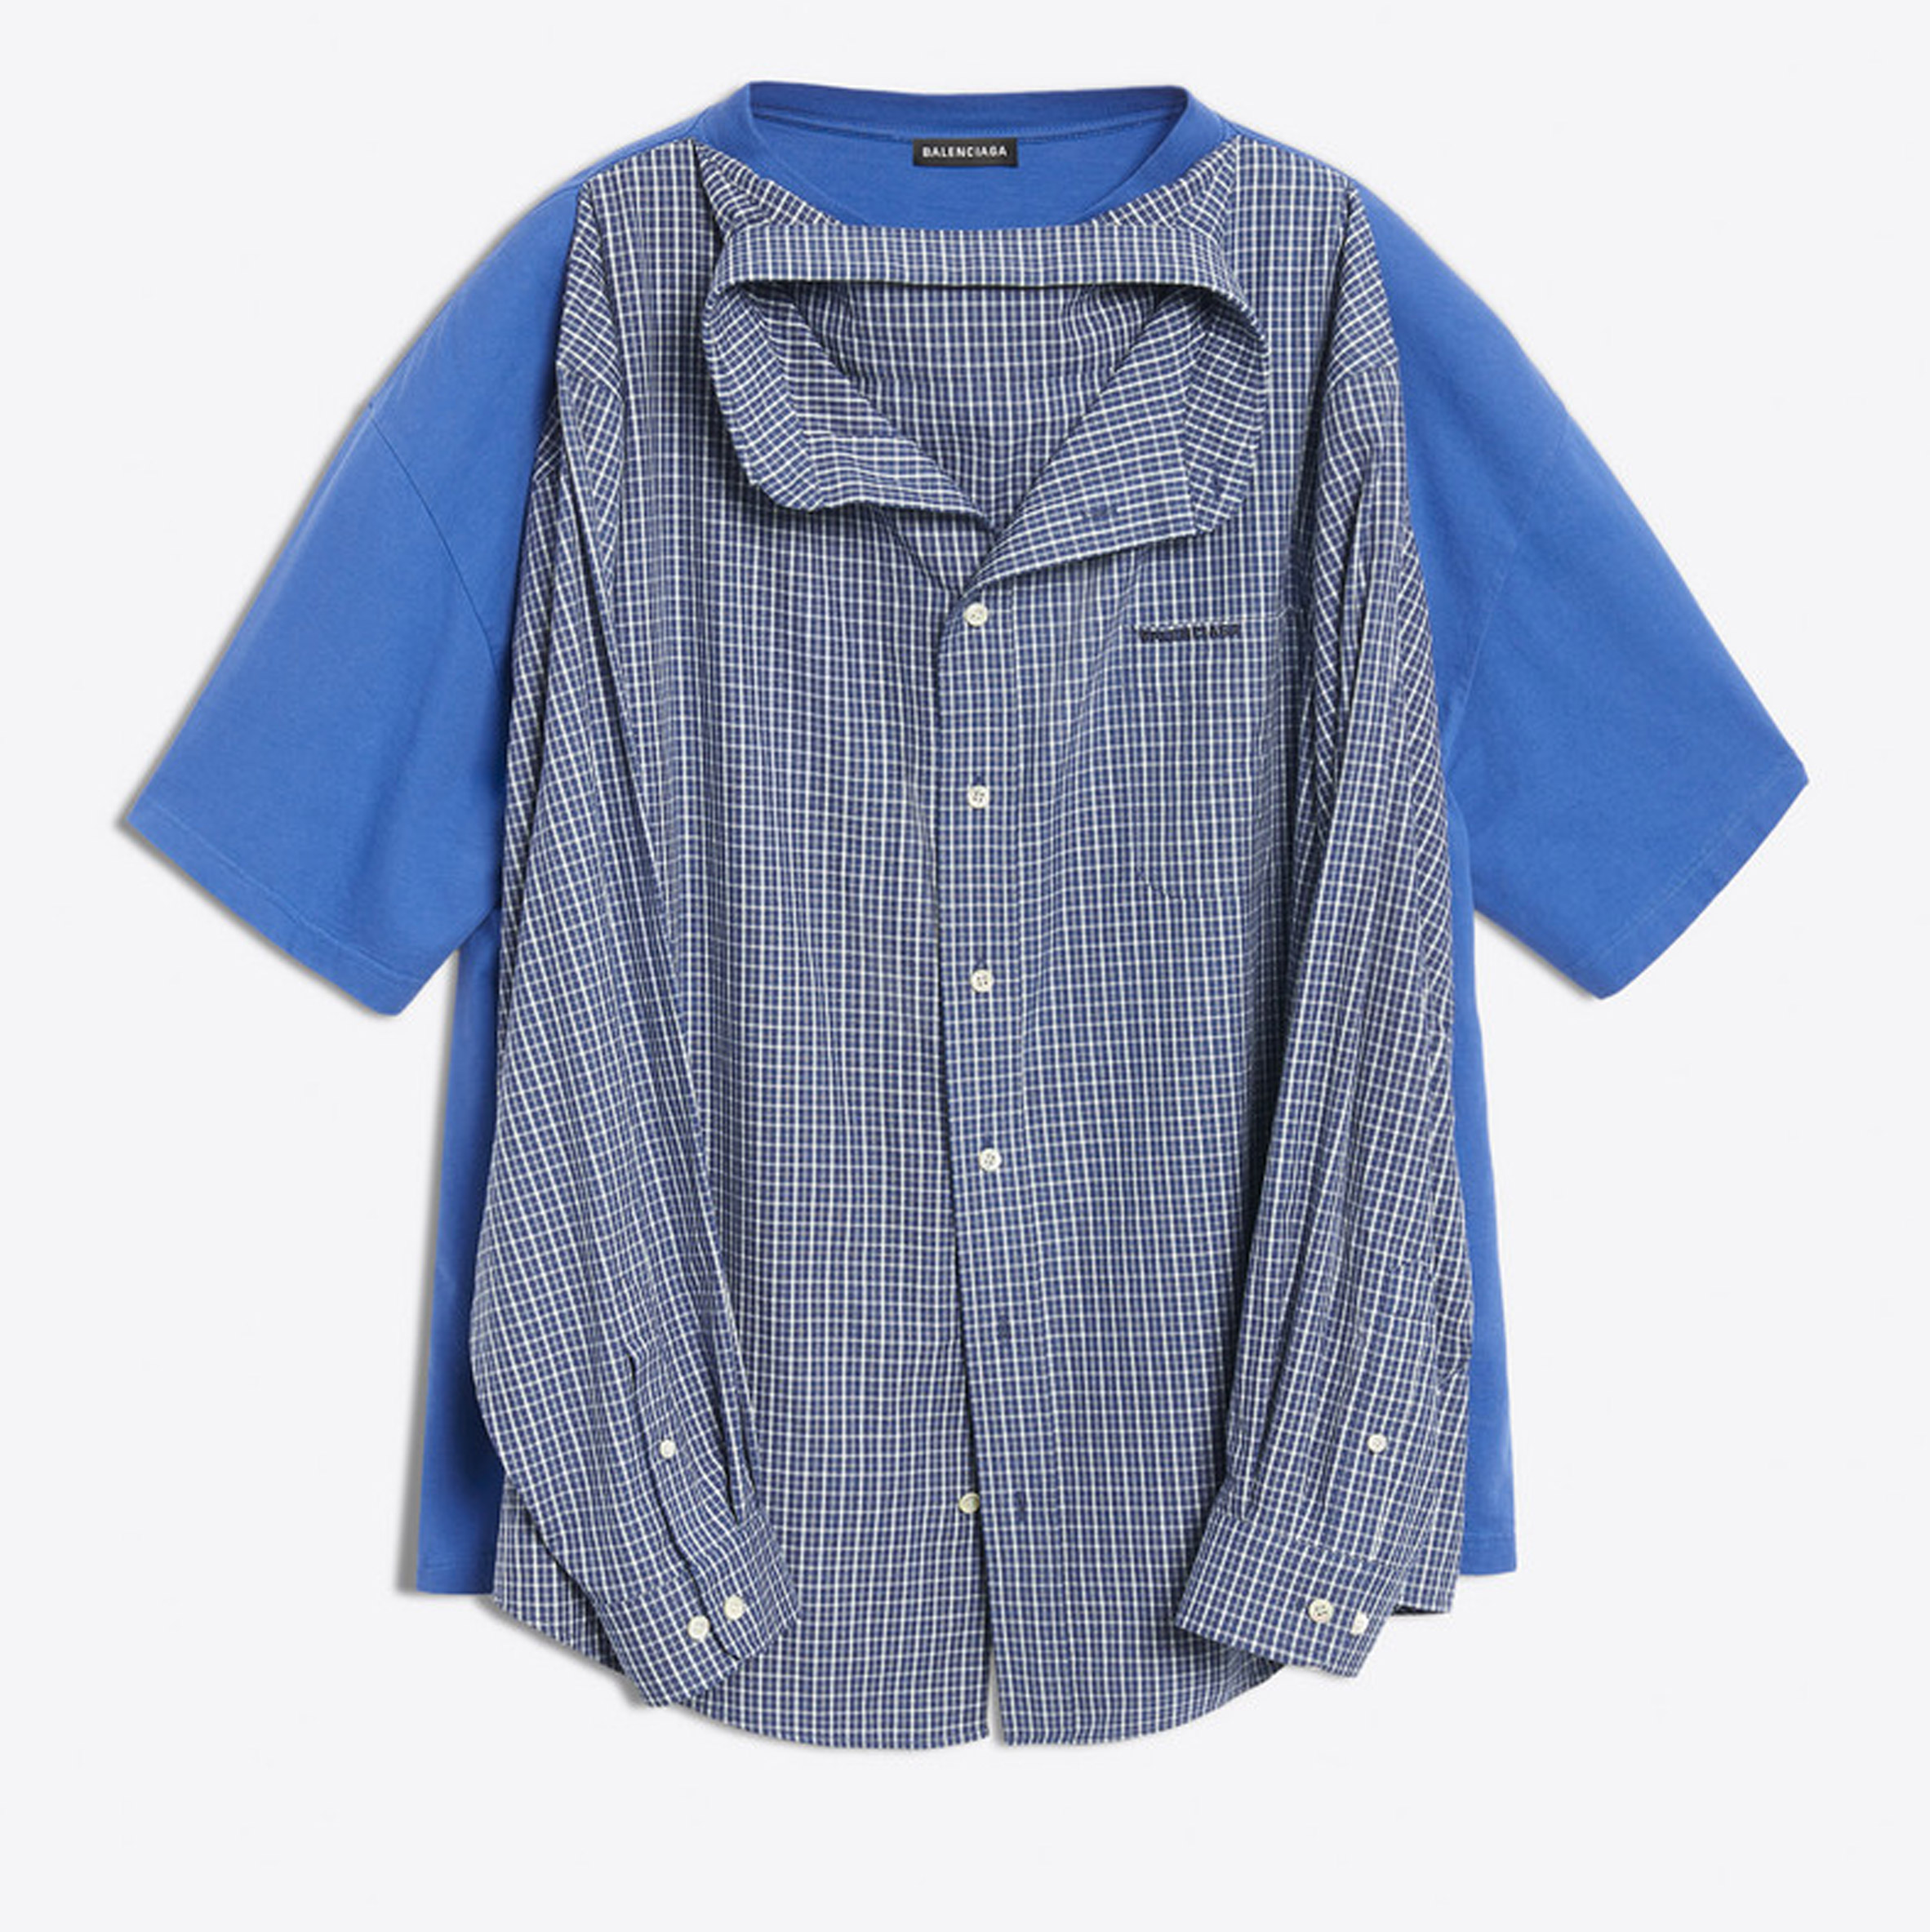 Shirt Balenciaga Online Sales, UP TO 58% OFF | www.loop-cn.com